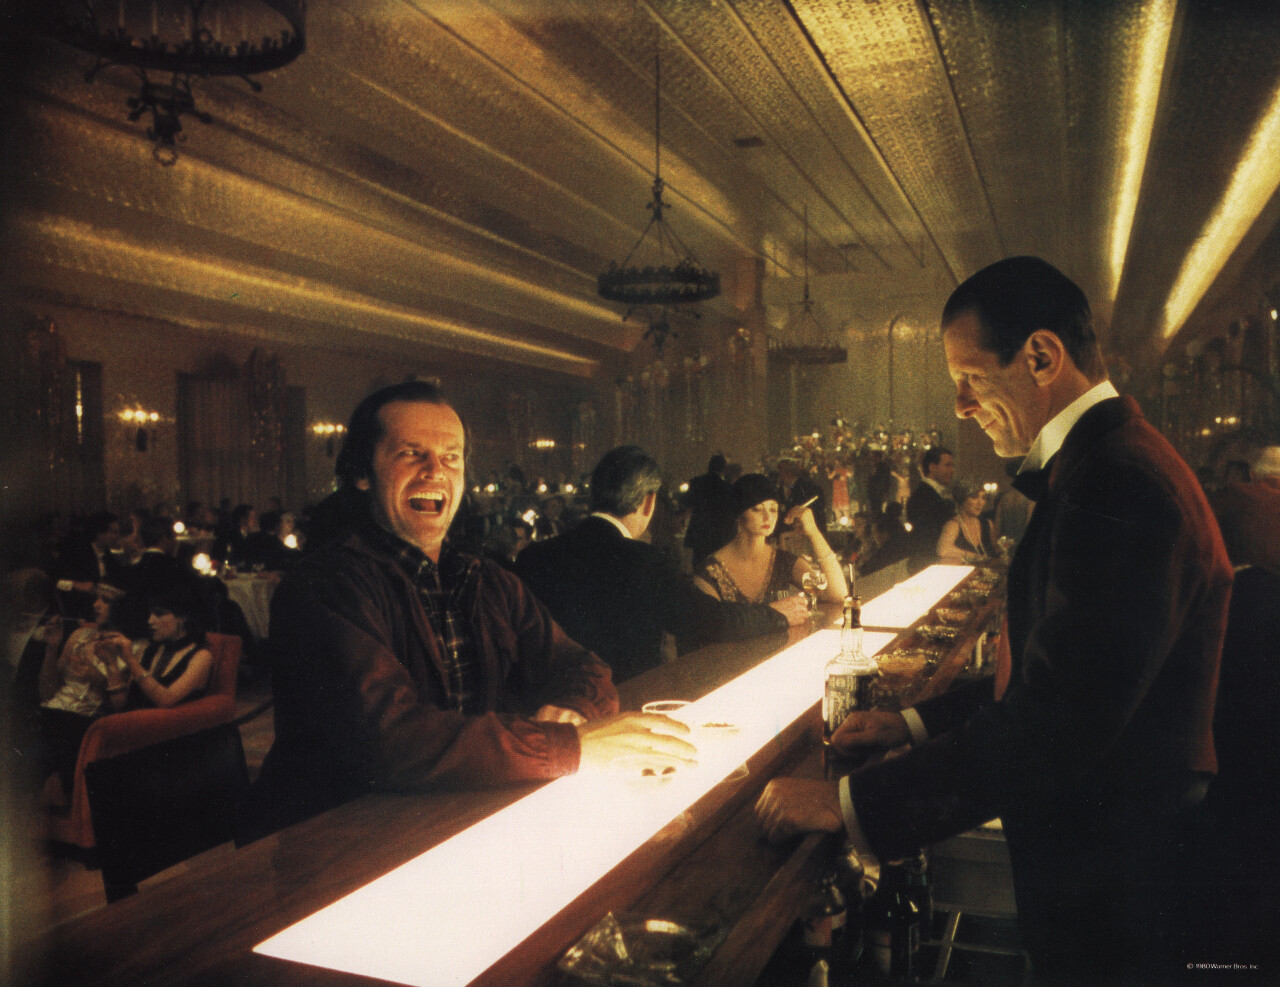 Сияние (The Shining, 1980), режиссёр Стэнли Кубрик, американский постер к фильму (ужасы, 1980 год) (10)